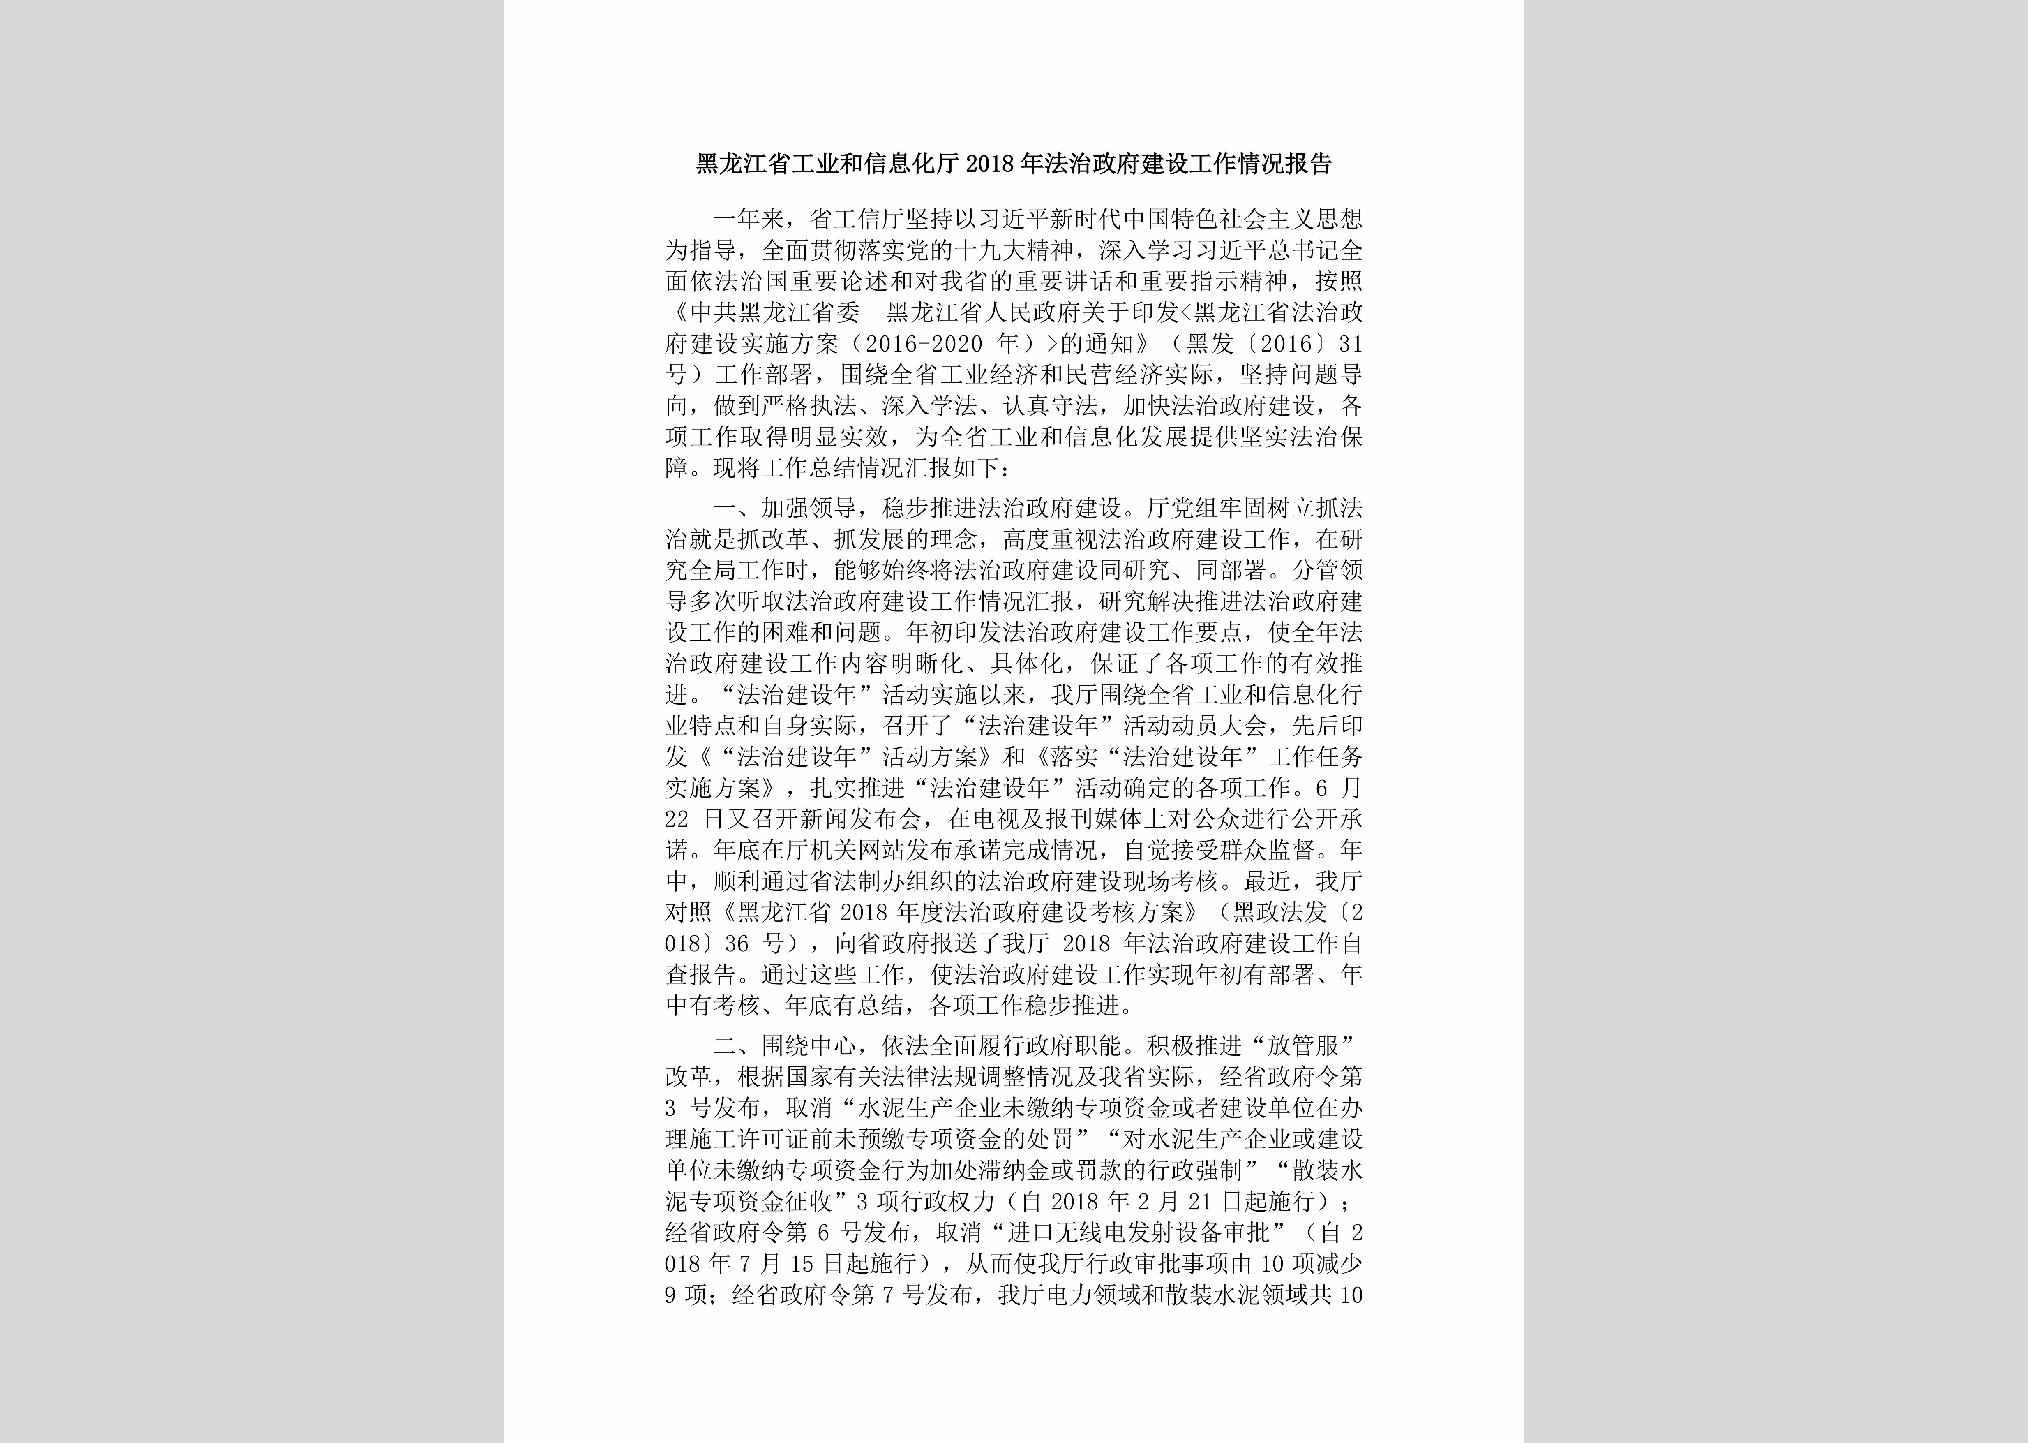 HLJ-FZZFJSGZ-2019：黑龙江省工业和信息化厅2018年法治政府建设工作情况报告